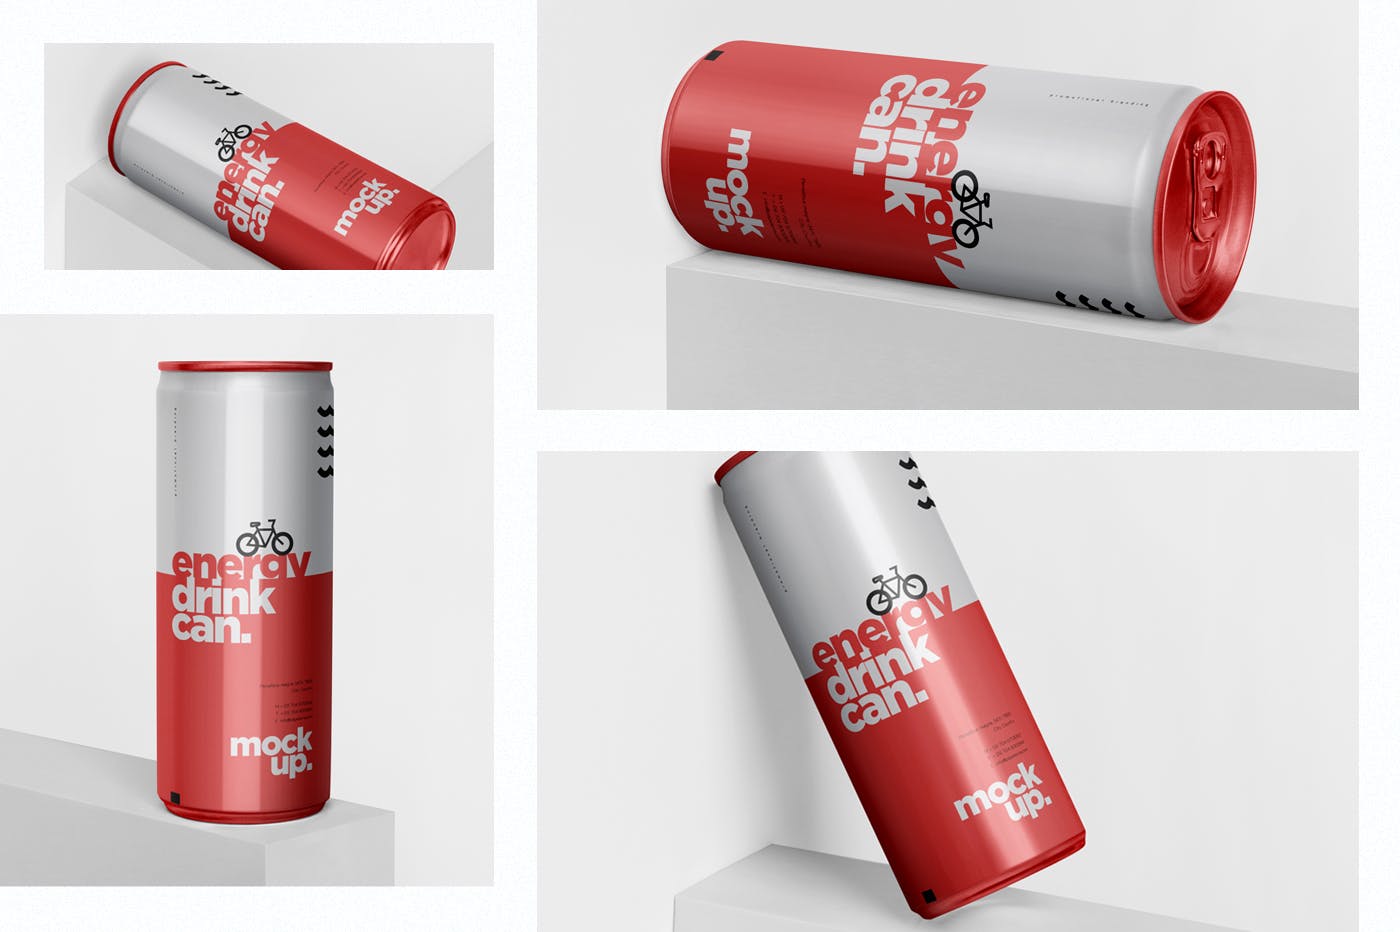 能量饮料易拉罐罐头外观设计16图库精选模板 Energy Drink Can Mock-Up – 250 ml插图(1)